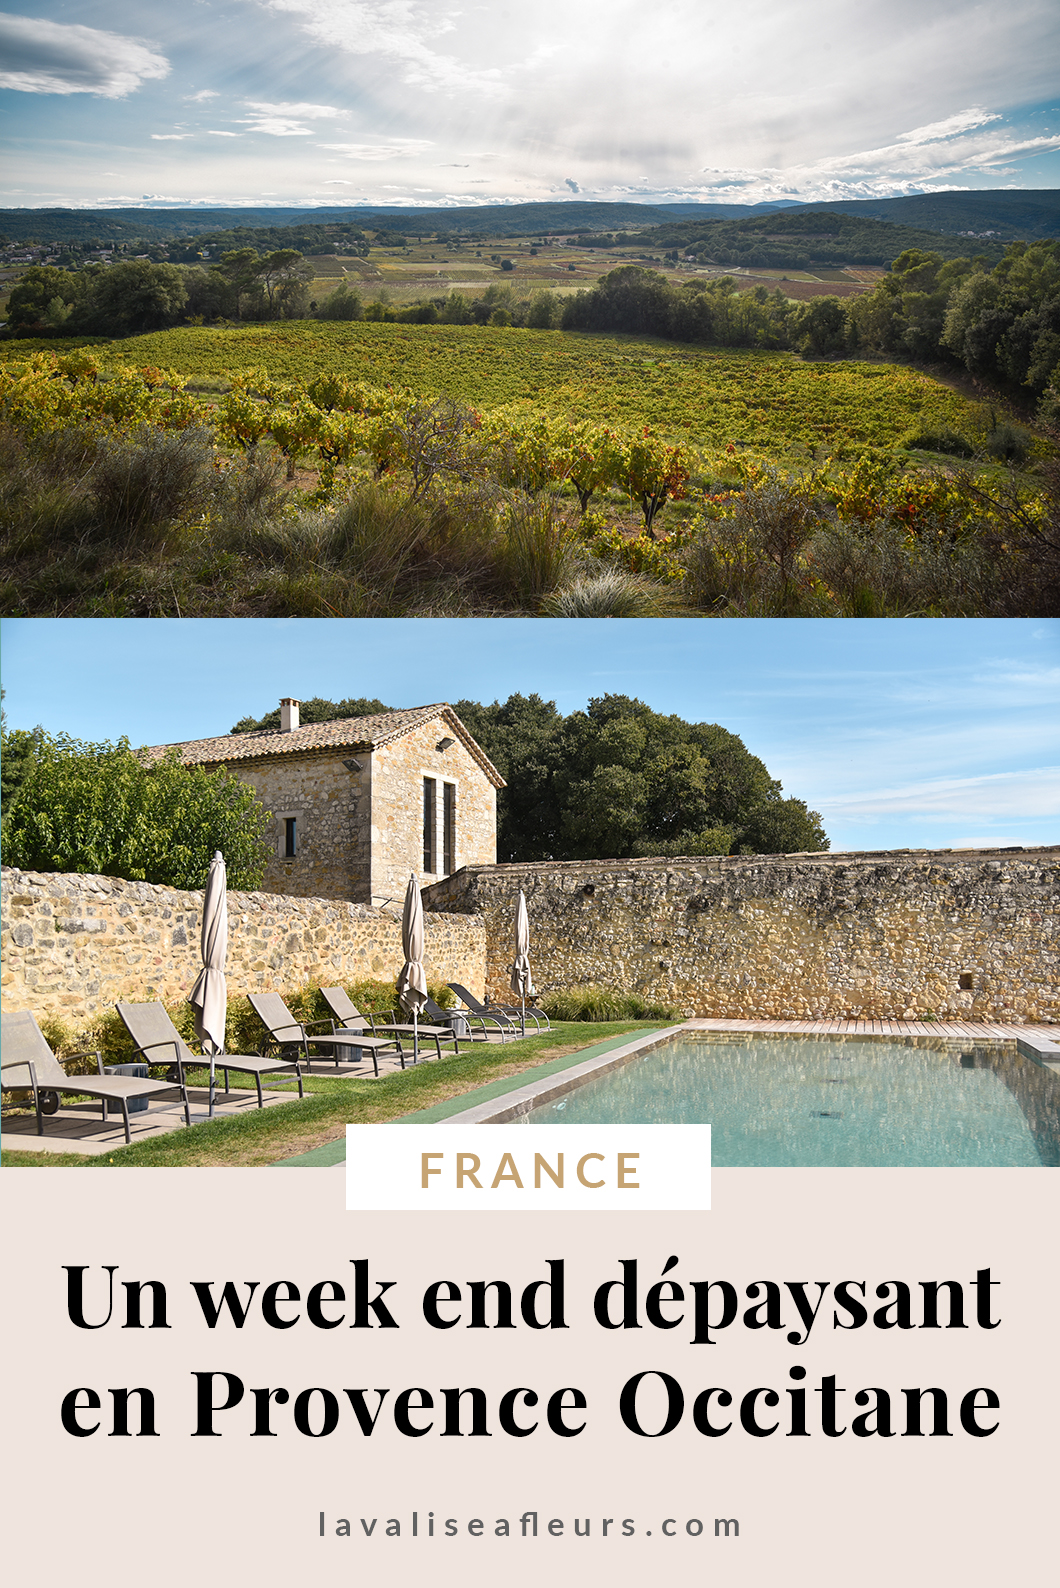 Un week end dépaysant en Provence Occitane en France